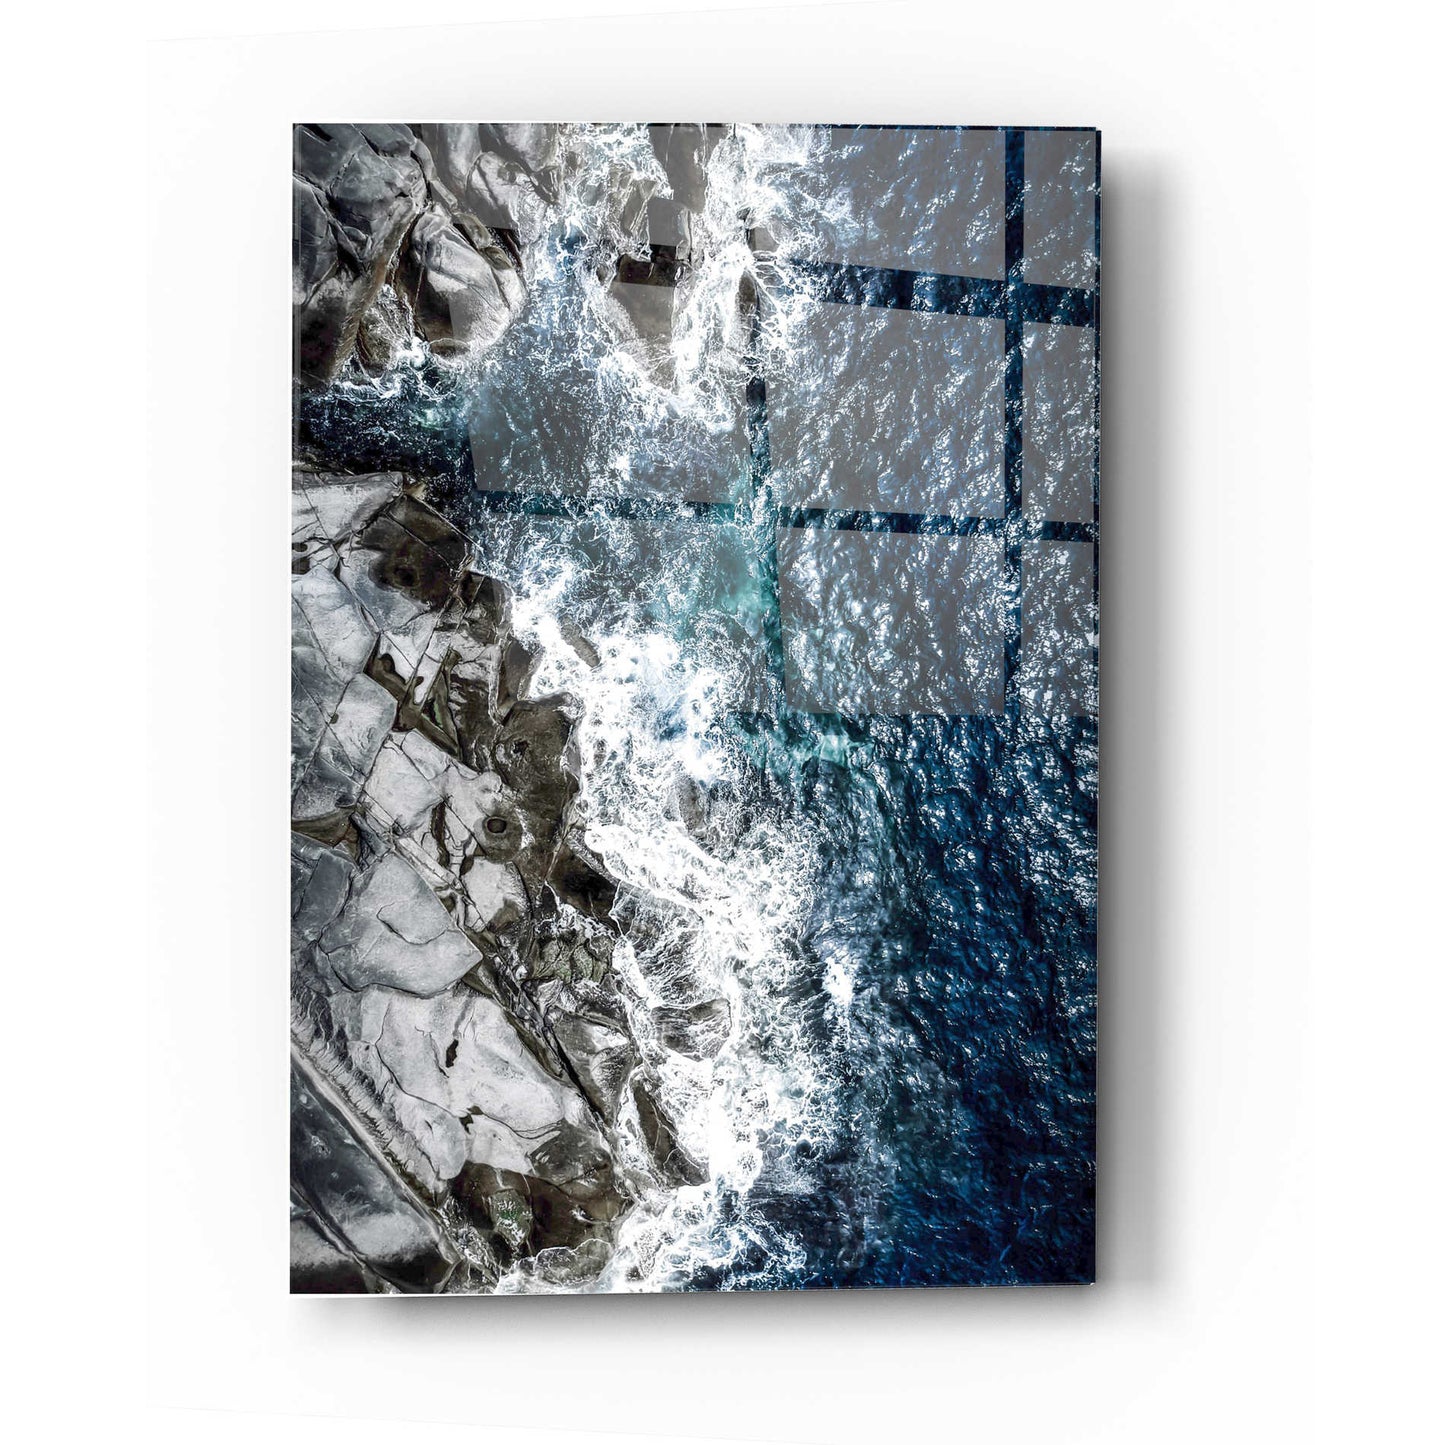 Epic Art 'Skagerrak Coastline' by Nicklas Gustafsson, Acrylic Glass Wall Art,12x16